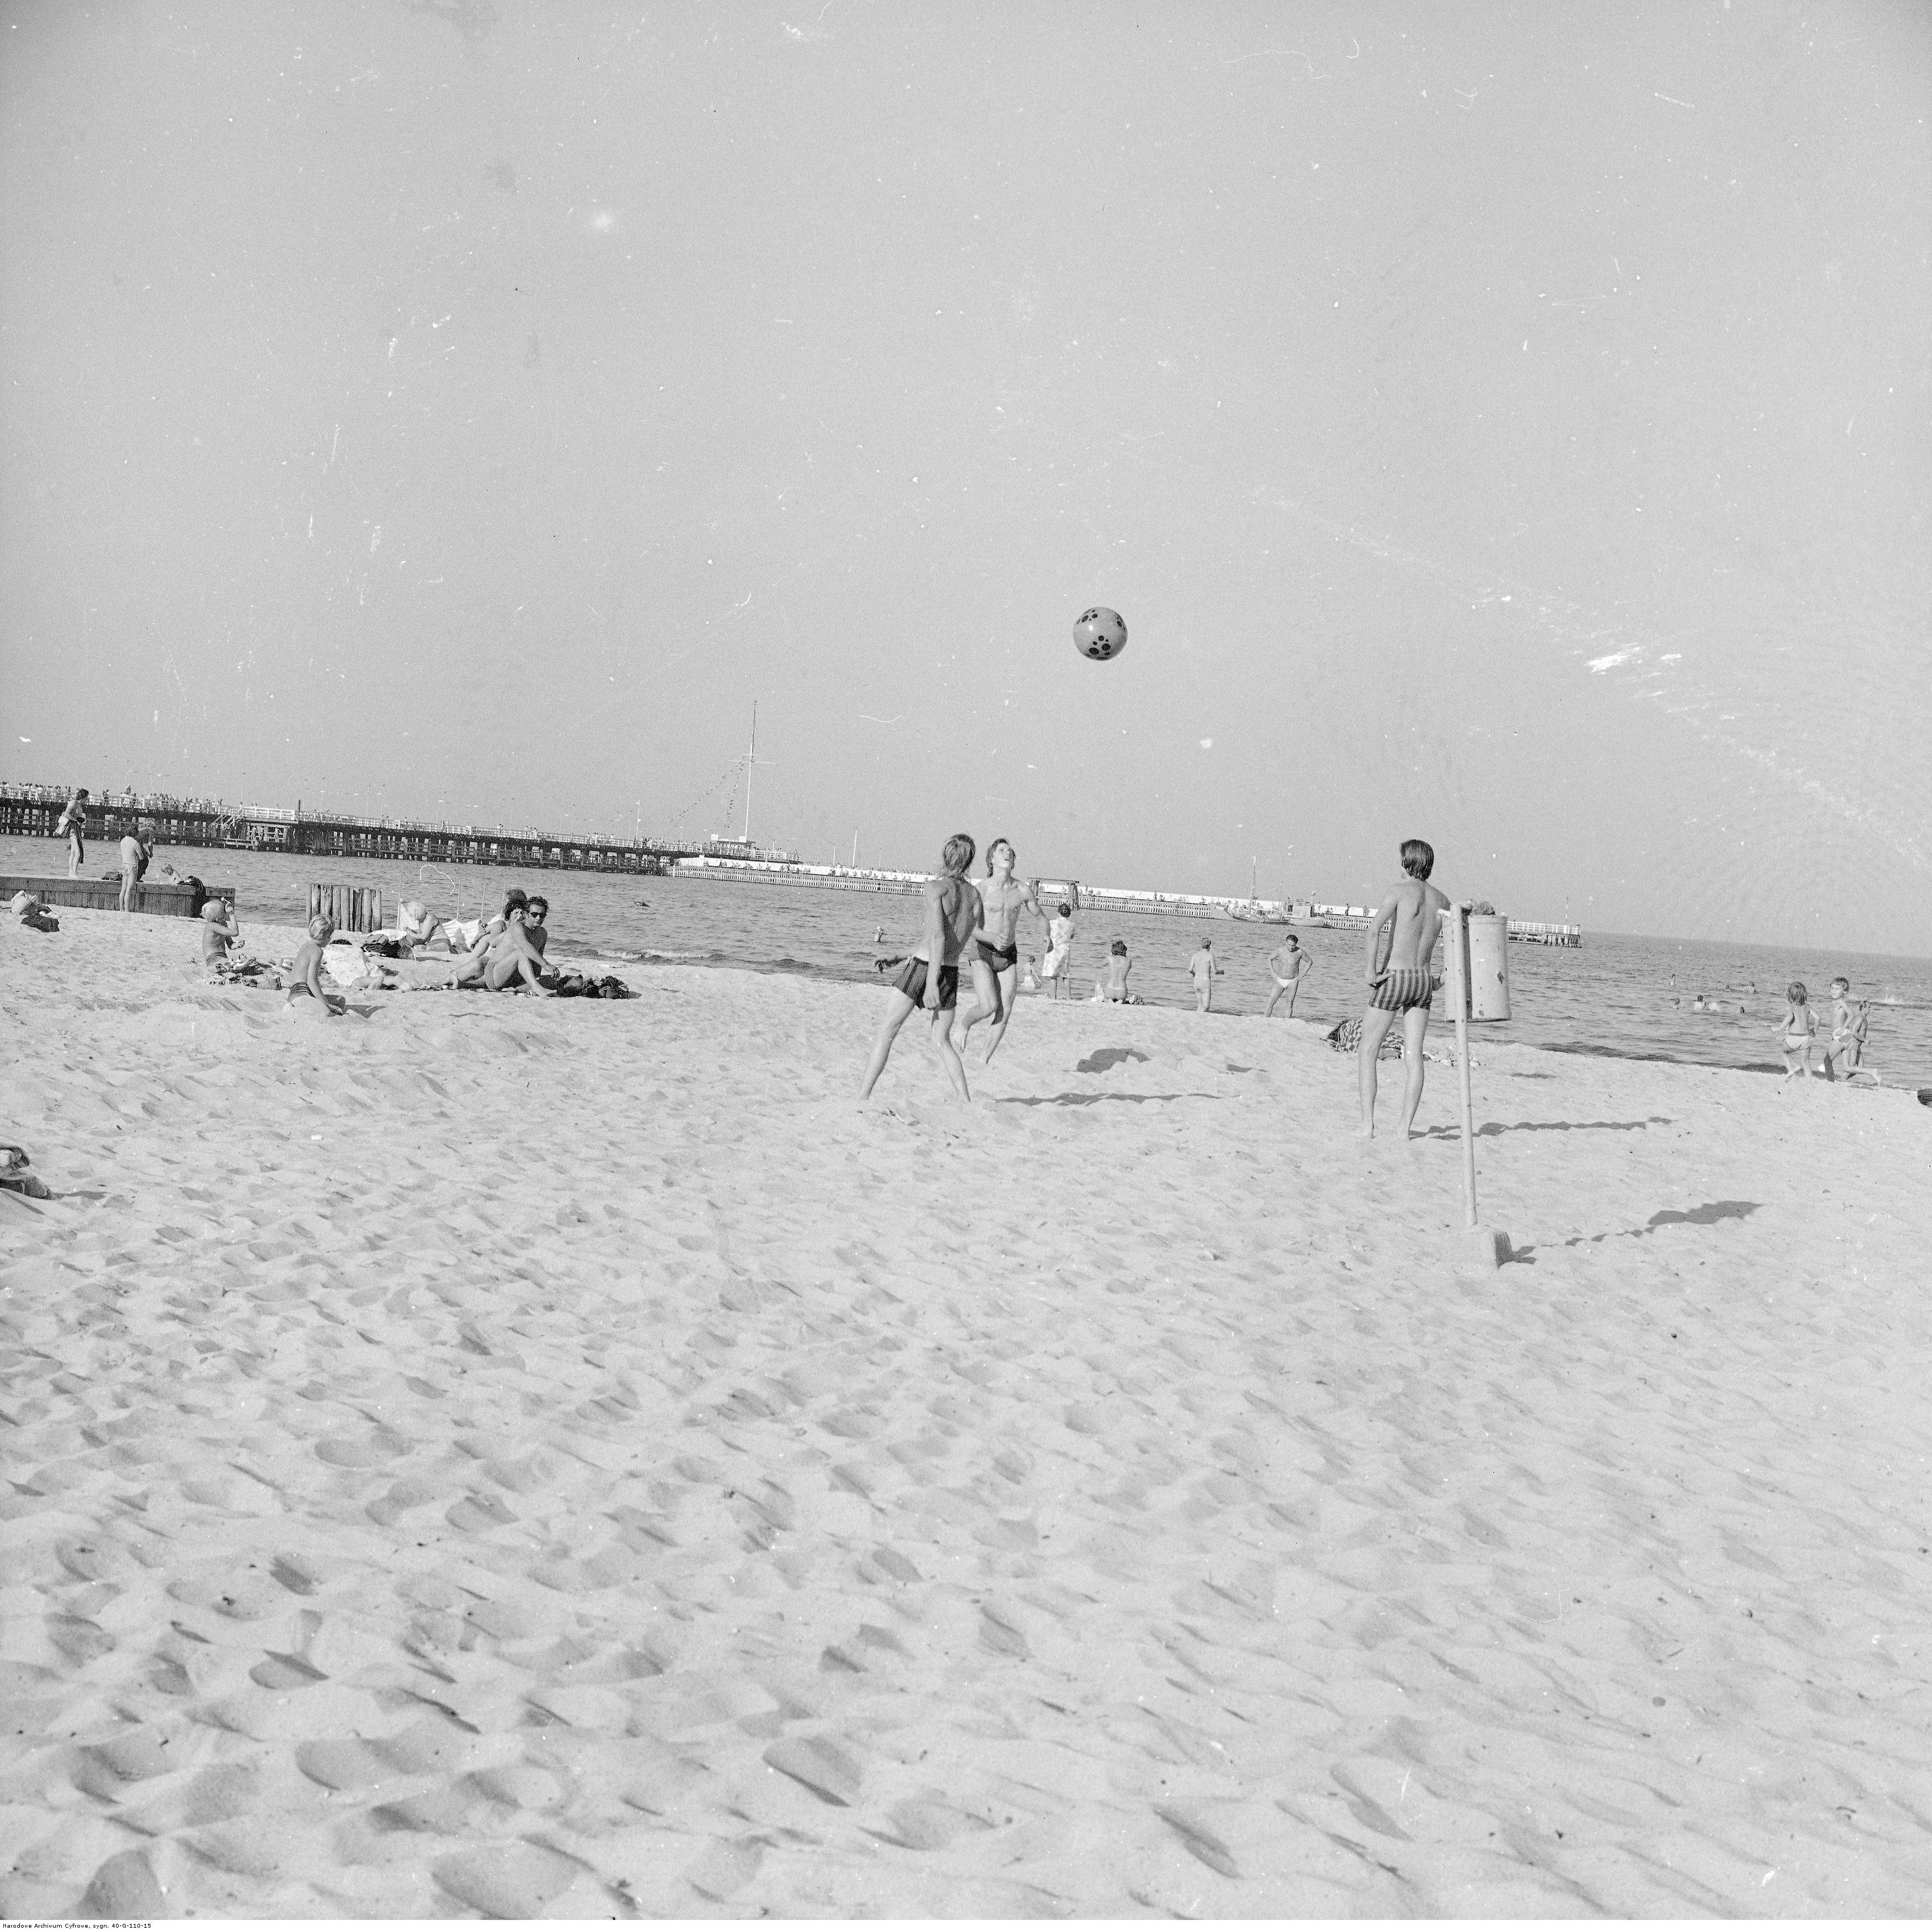 Gra w siatkówkę na plaży, w oddali widać molo, 1976 rok